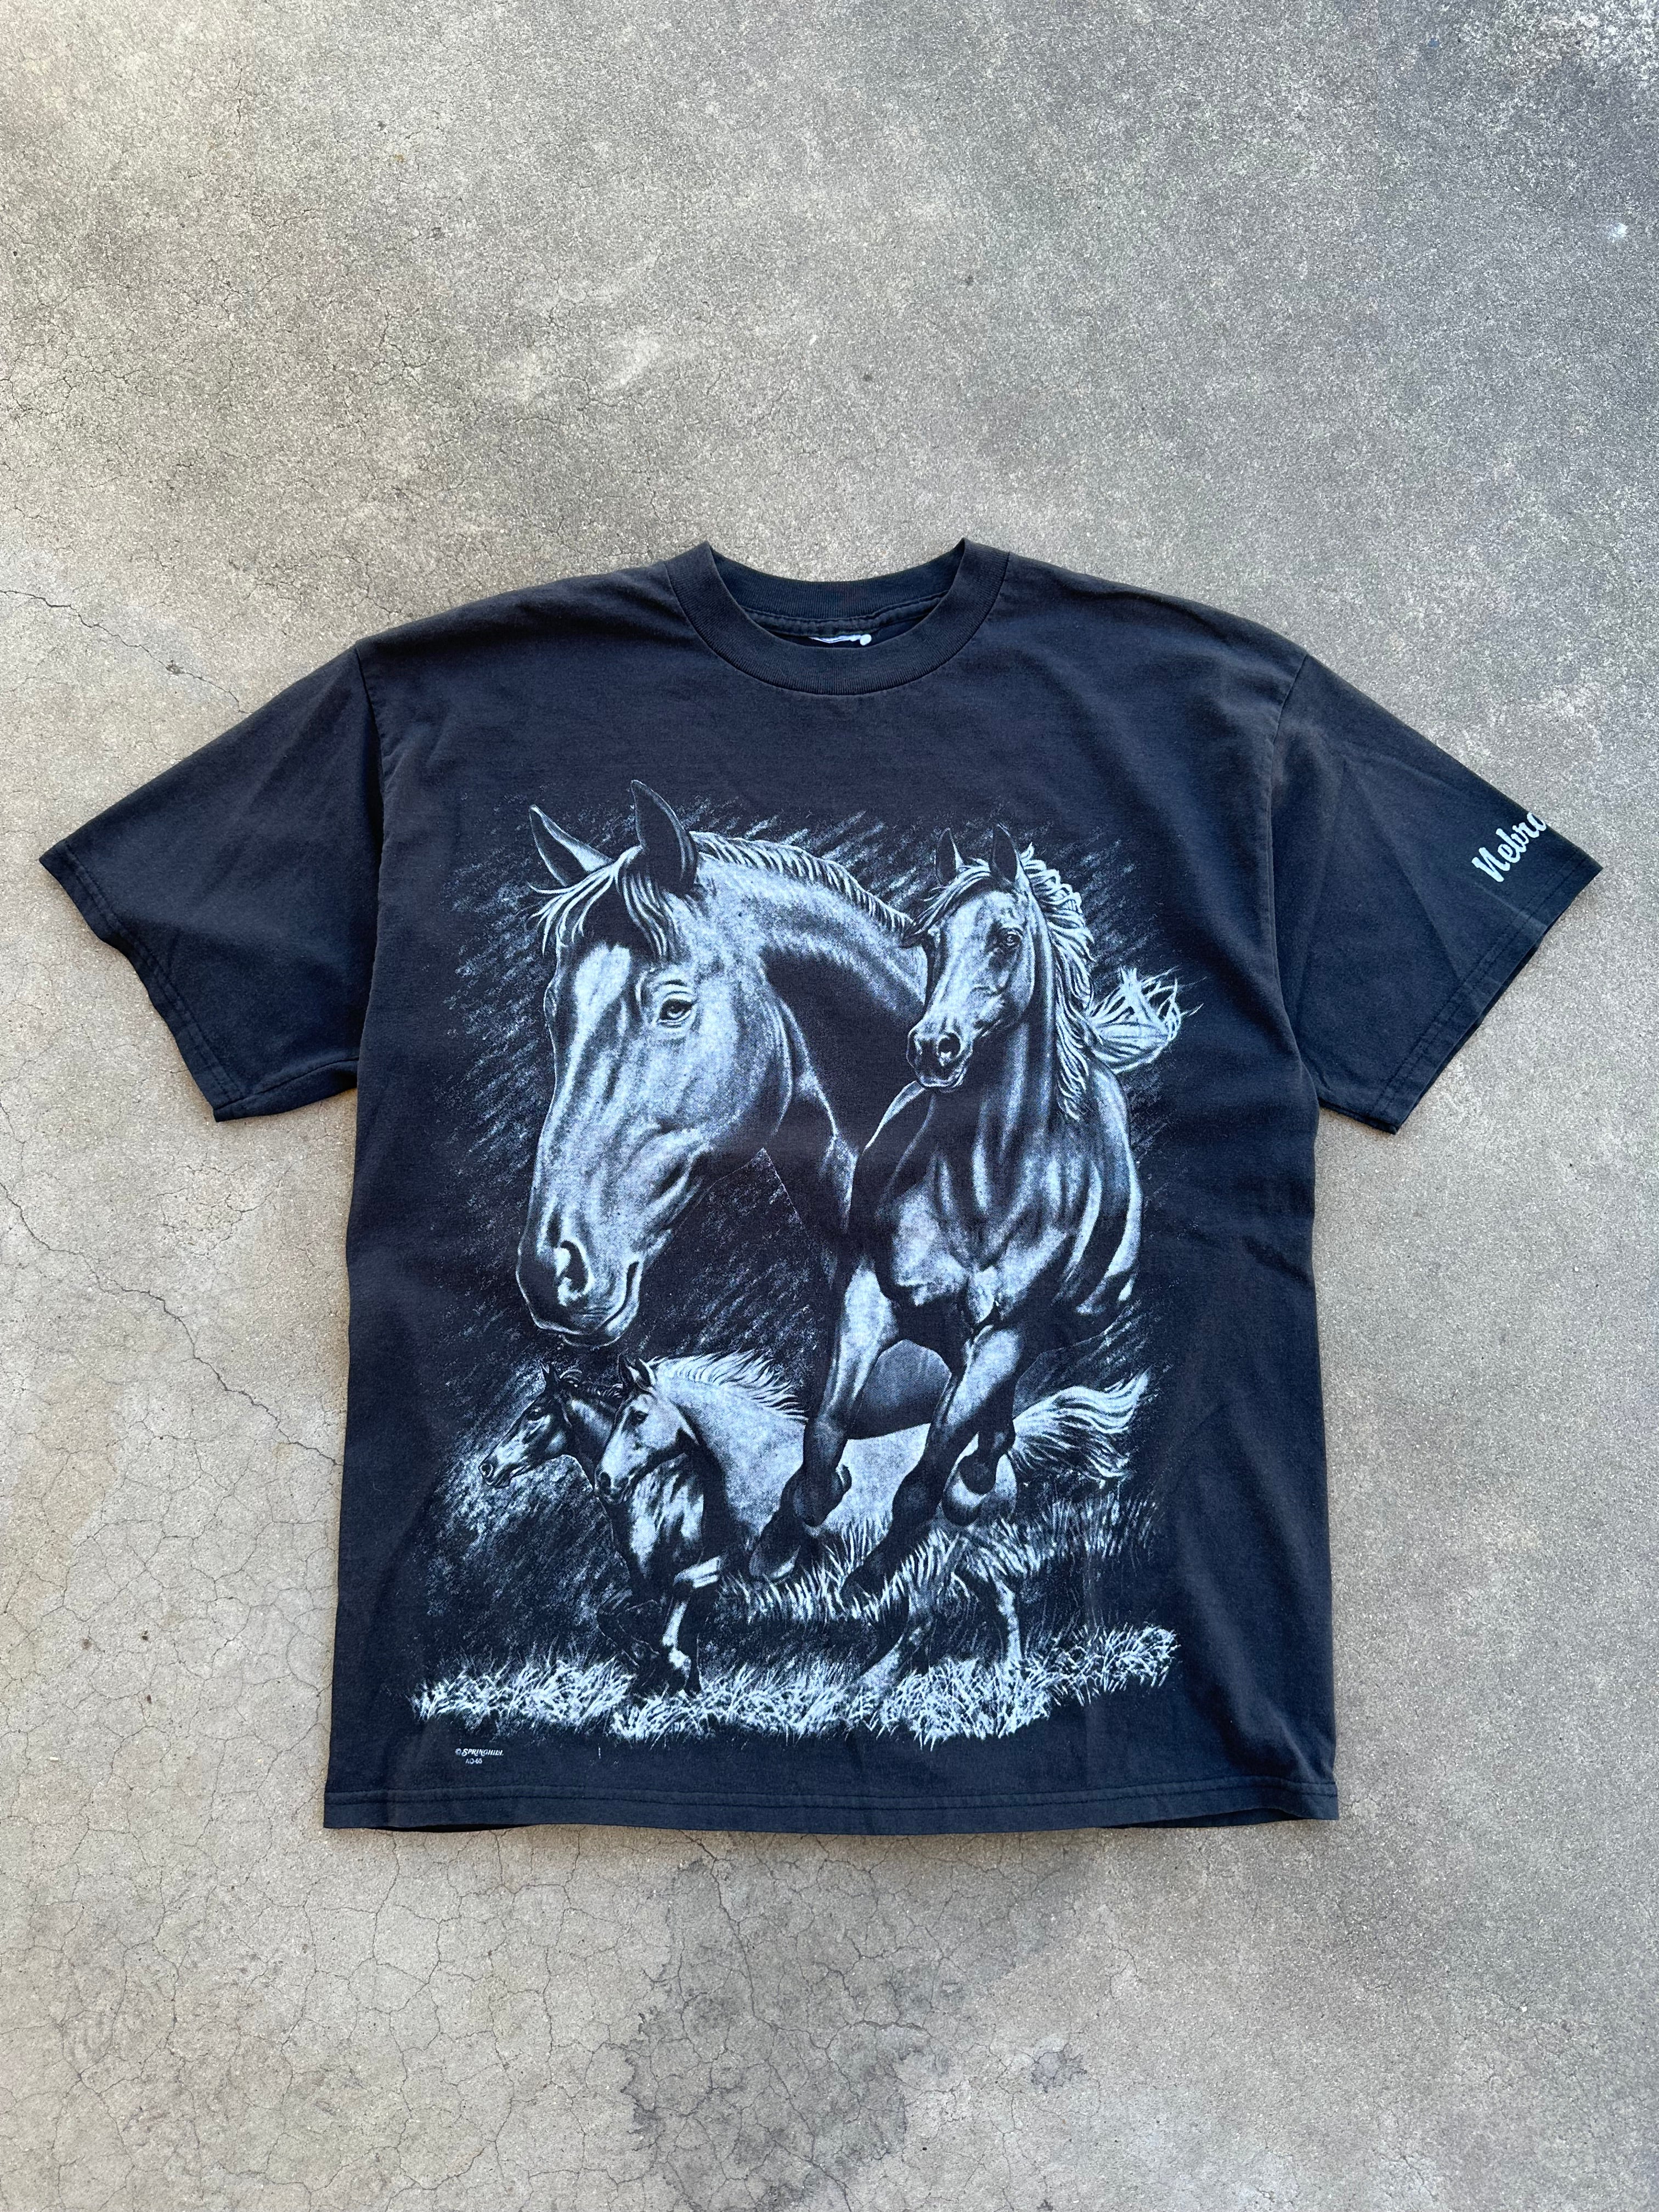 1990s Horses All Over Print T-Shirt (L)